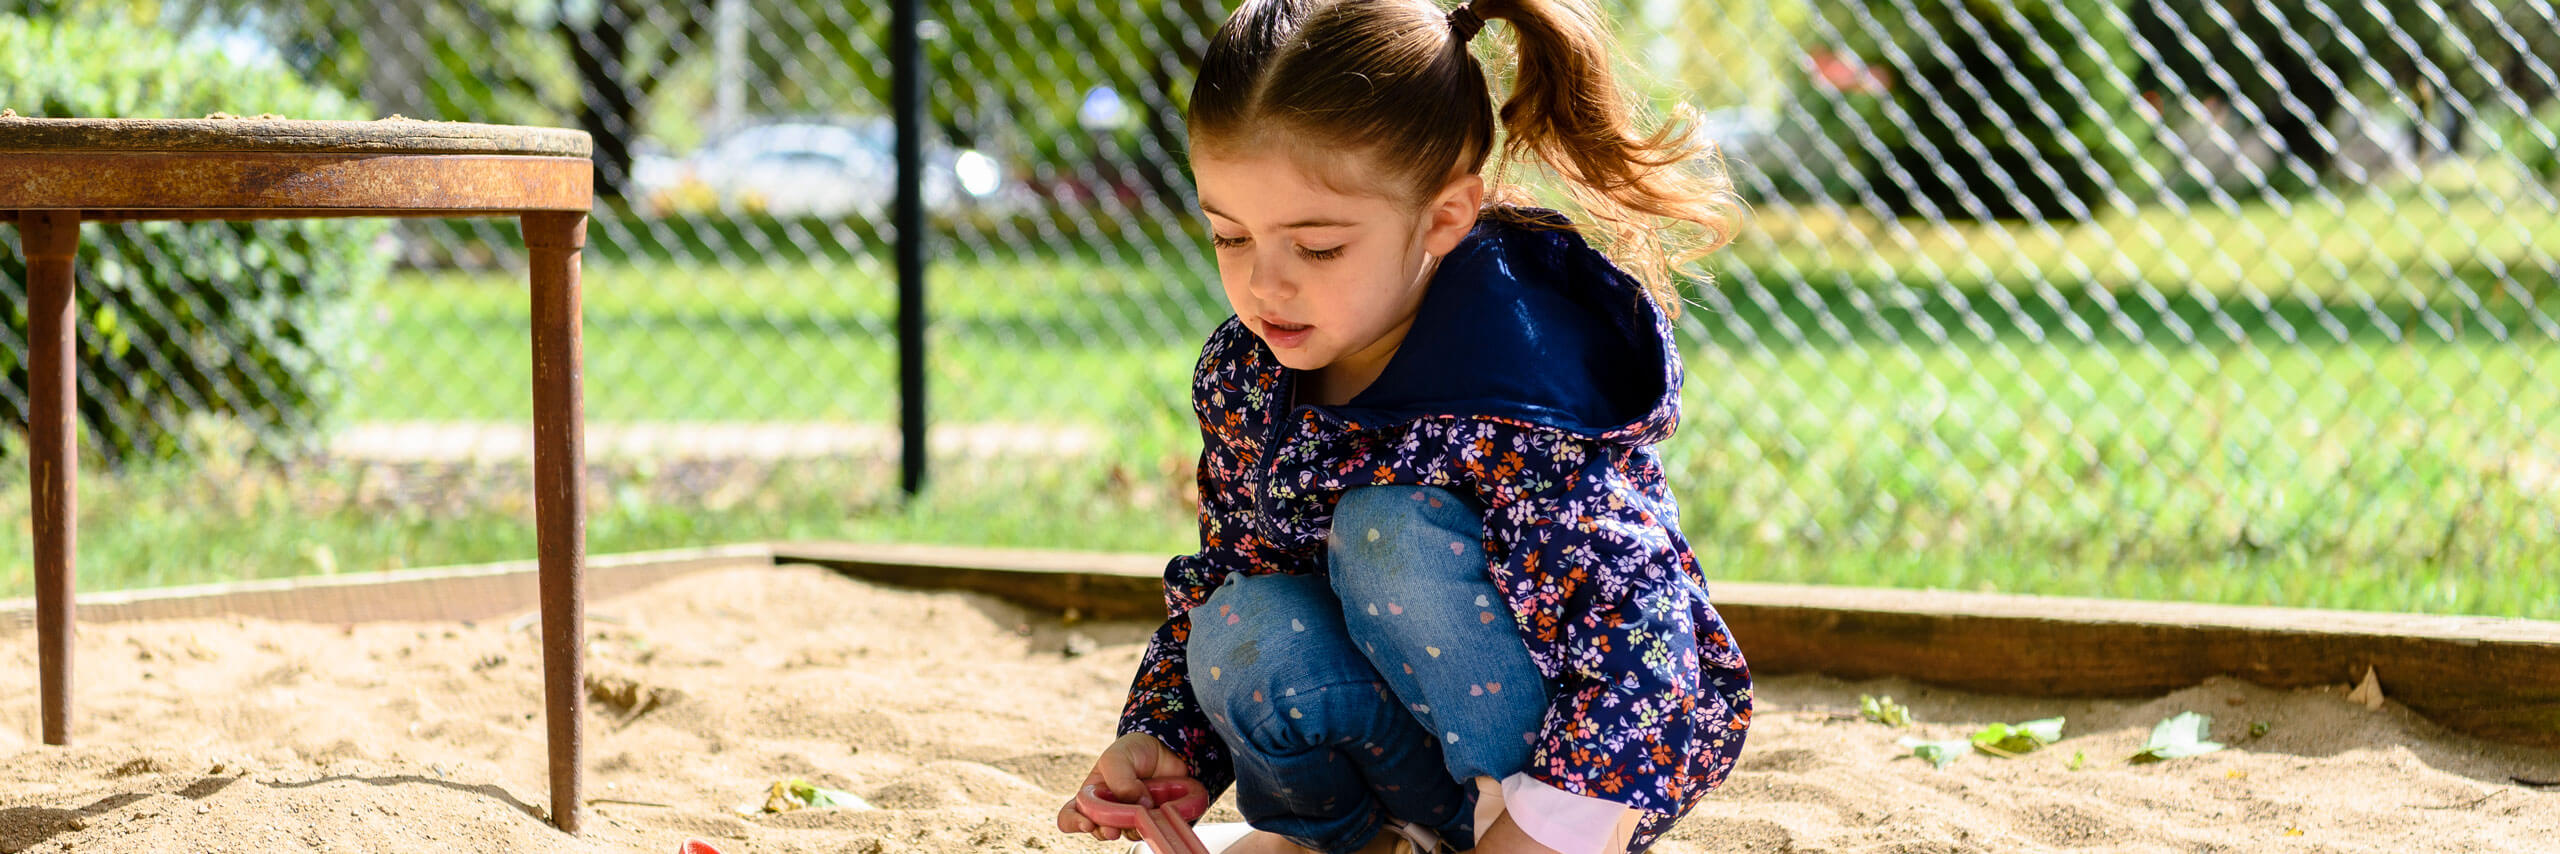 Child plays in a sandbox.